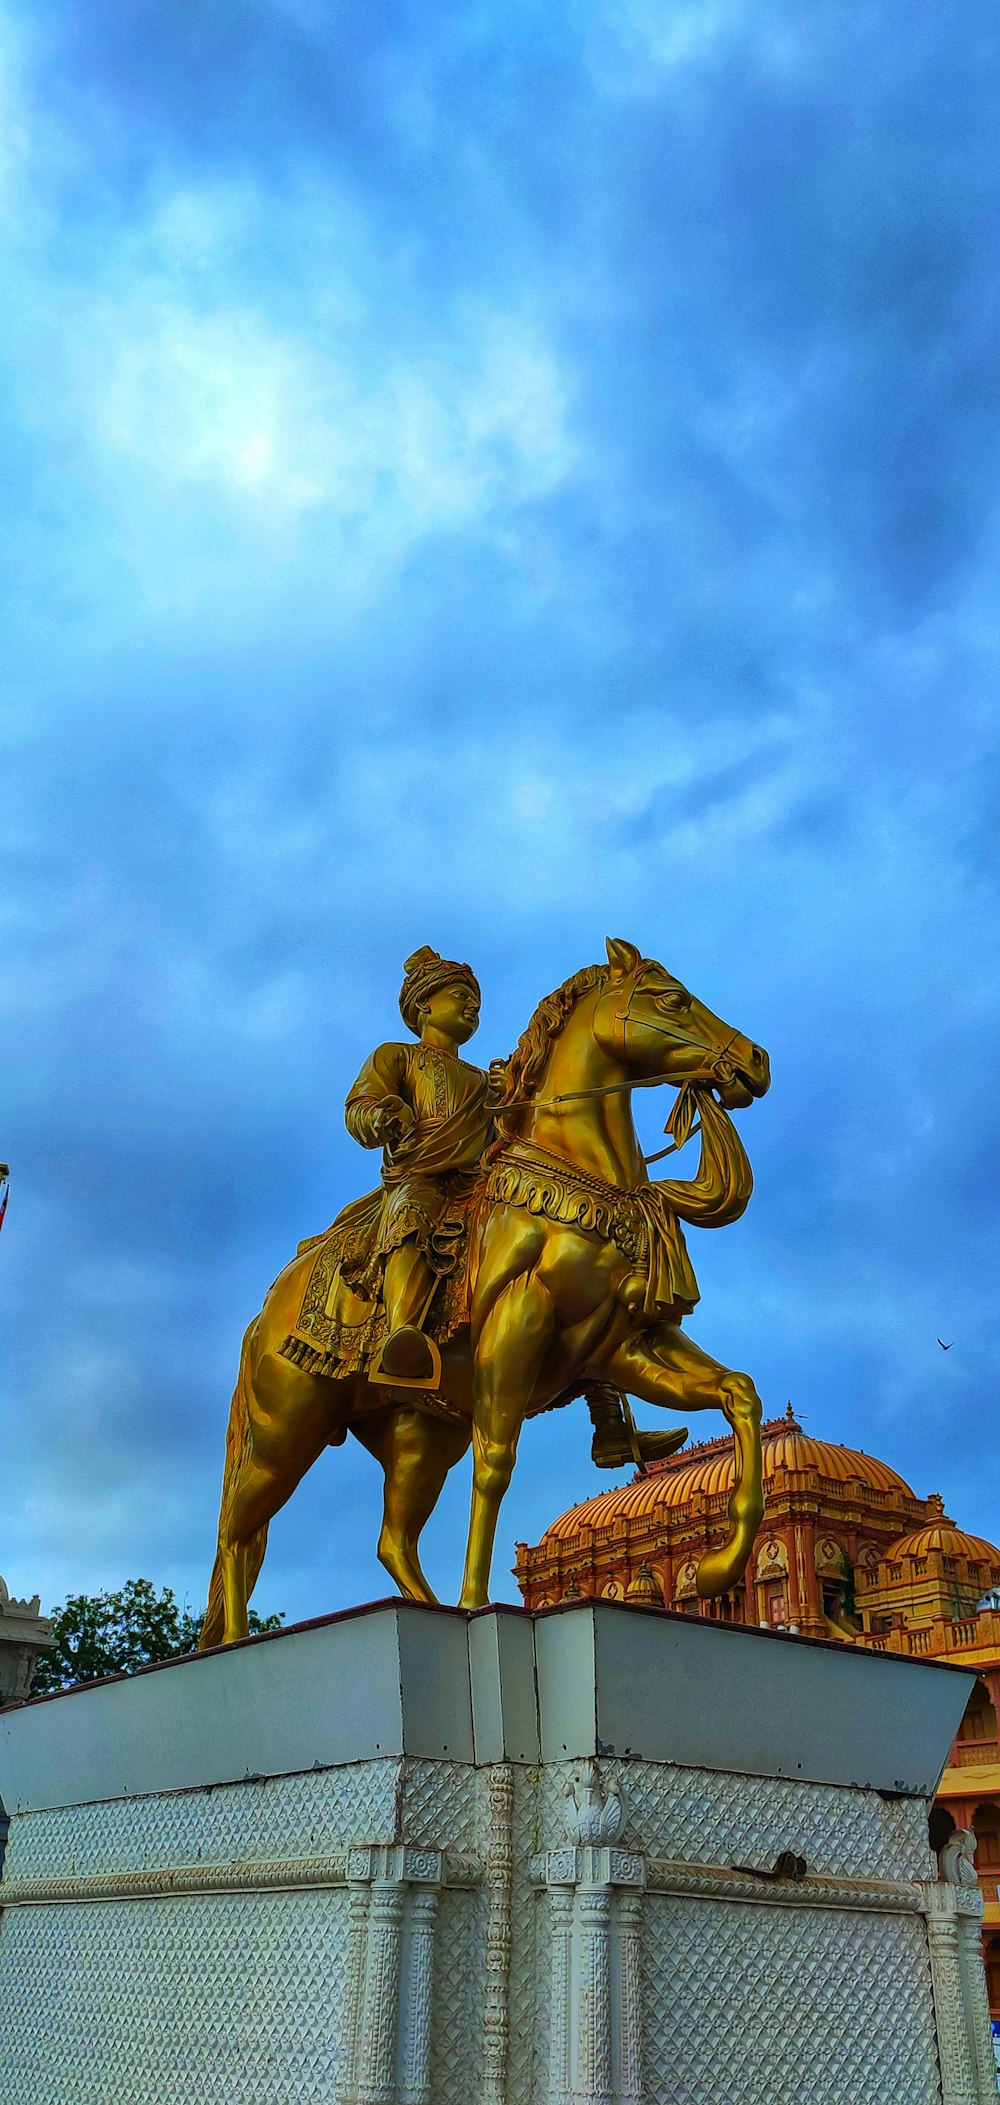 a golden statue of a man riding a horse